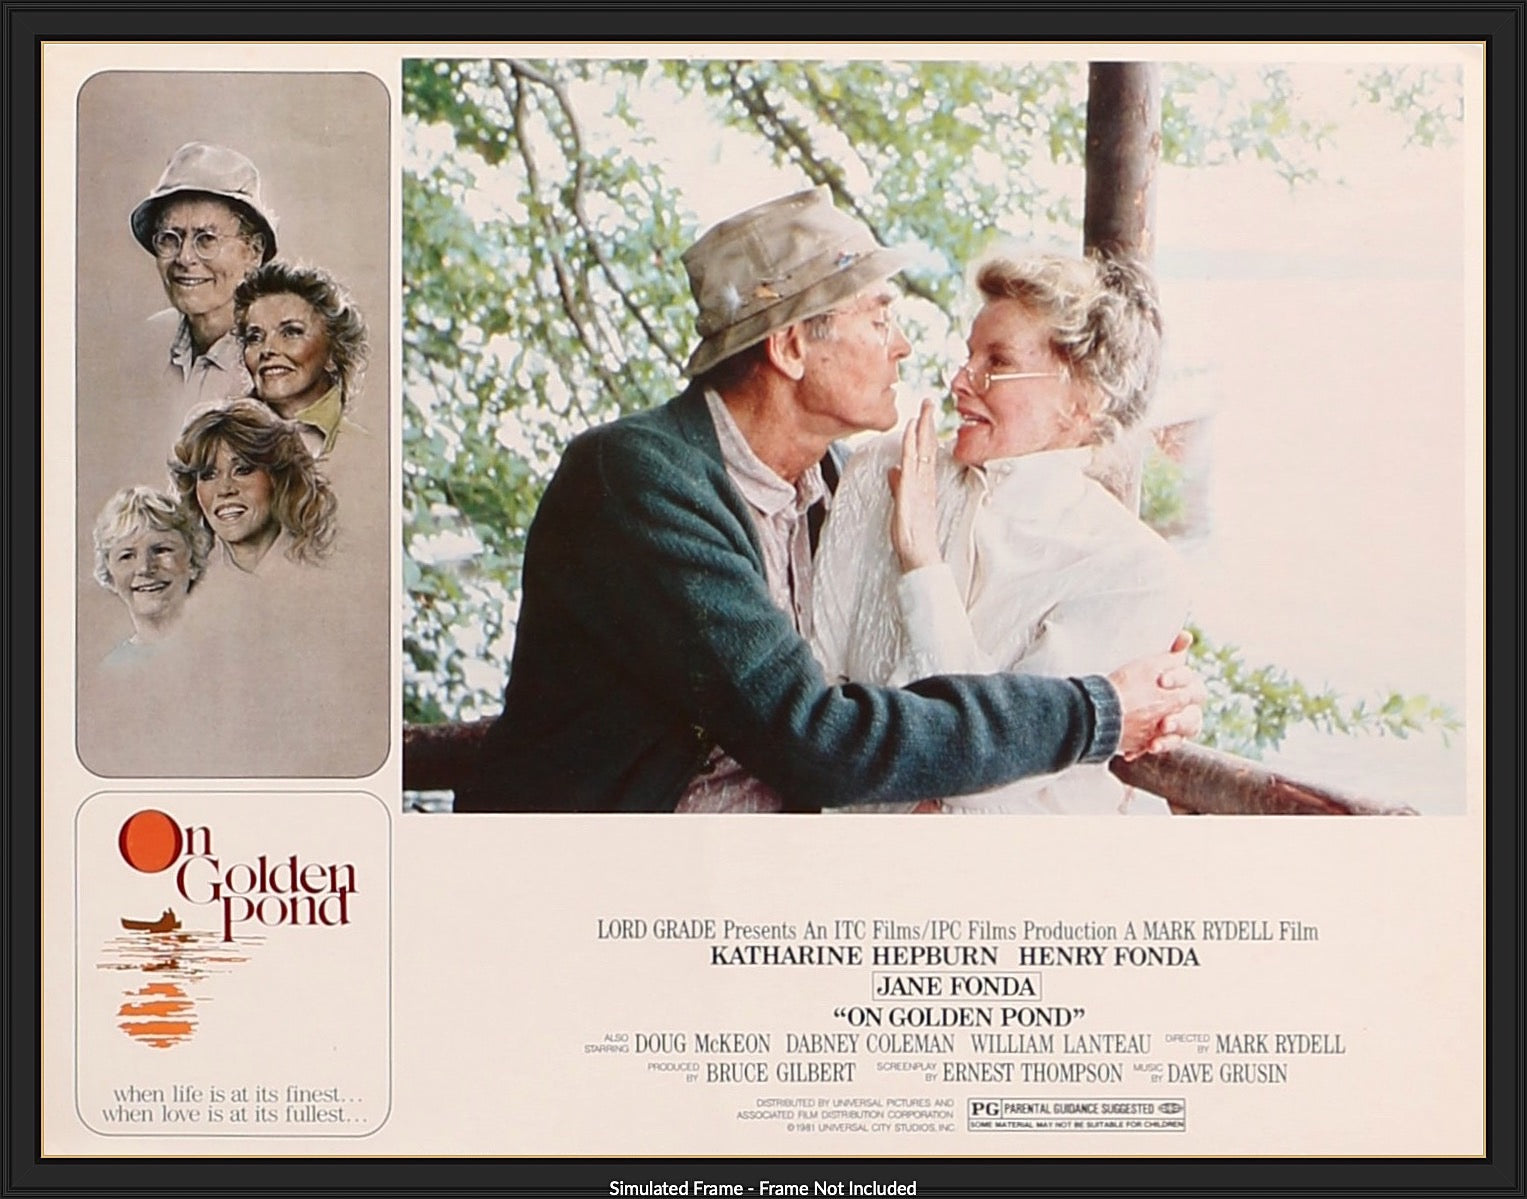 On Golden Pond (1981) original movie poster for sale at Original Film Art